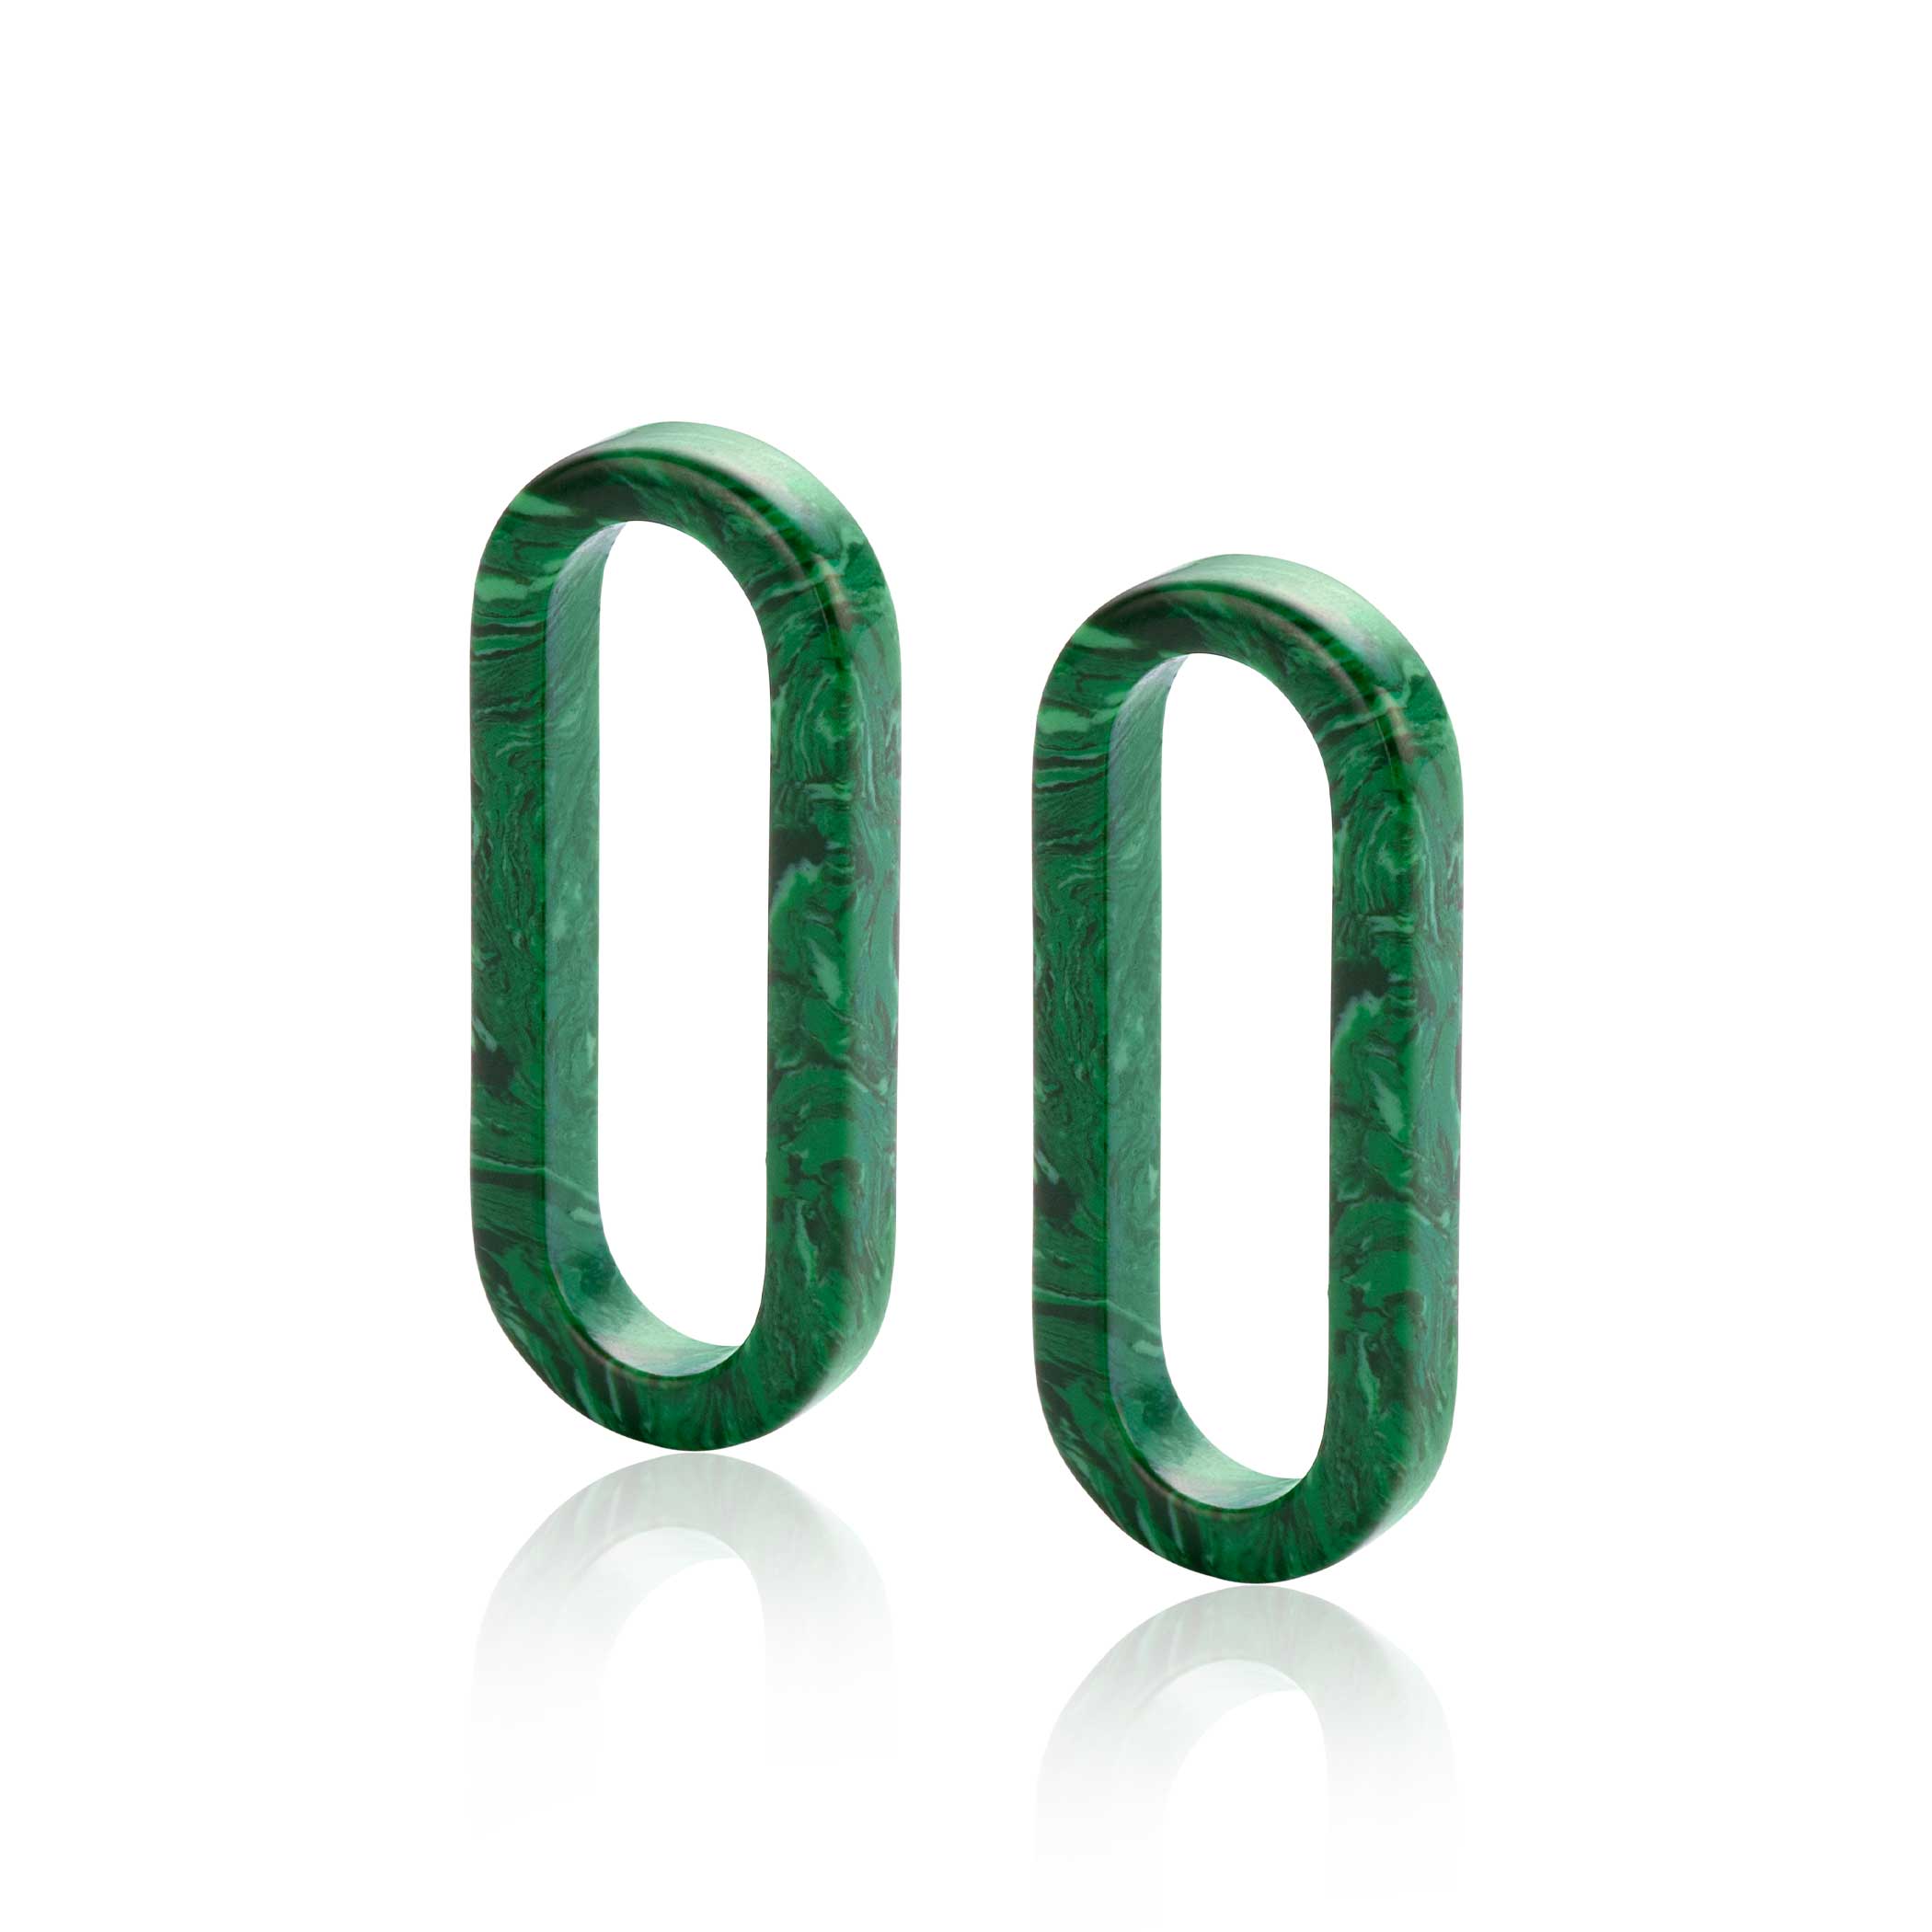 30mm ZINZI Large Oval Earrings Pendants in Trendy Malachite Green ZICH2456G (excl. hoop earrings)